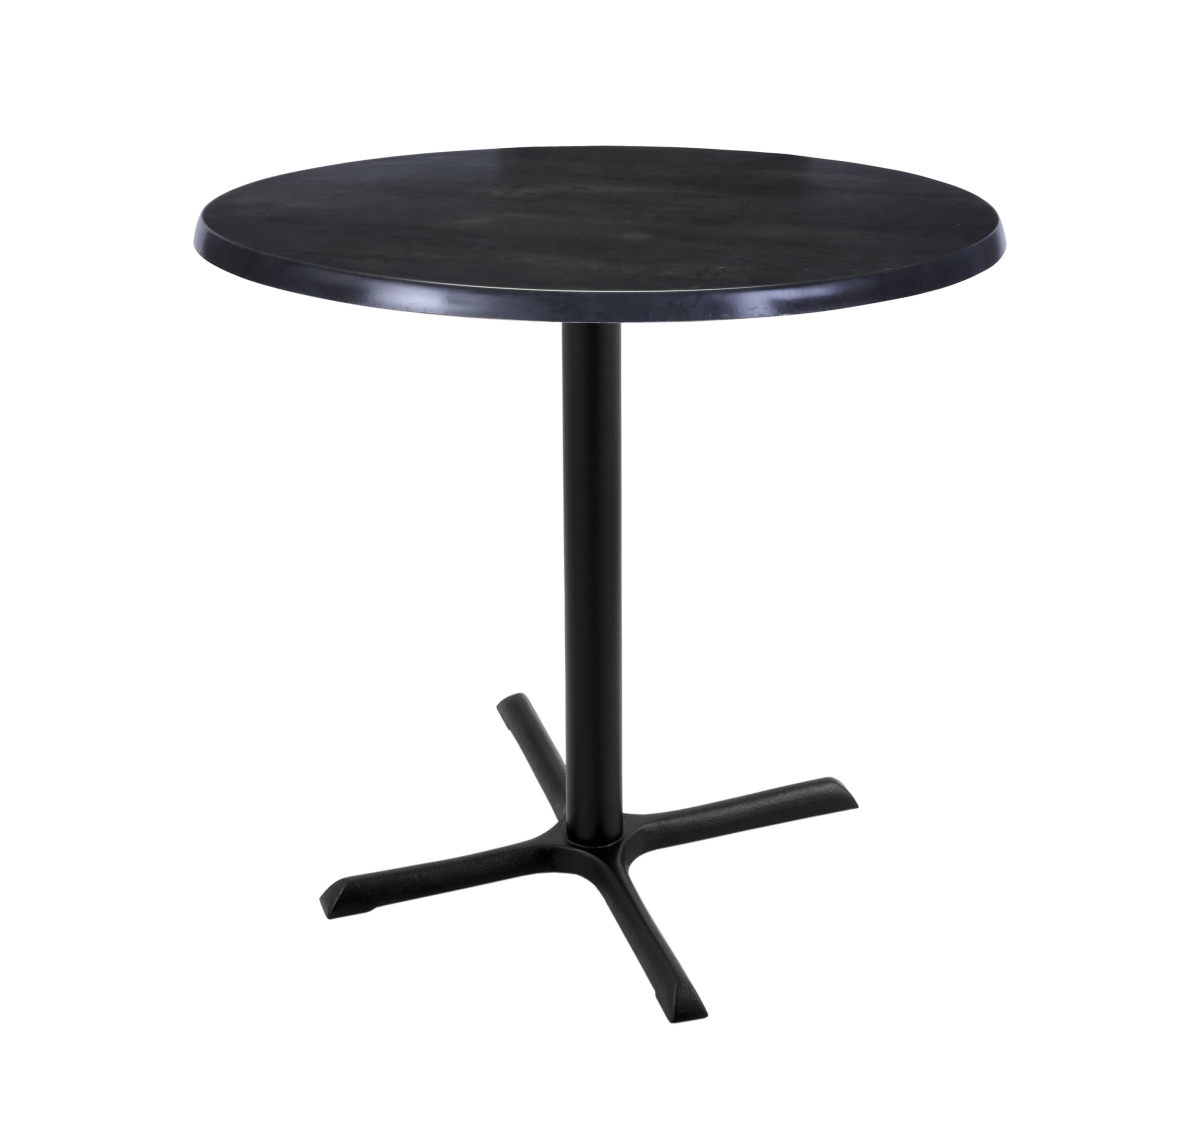 36 In. Black Table With 30 In. Diameter Indoor & Outdoor Black Steel Round Top